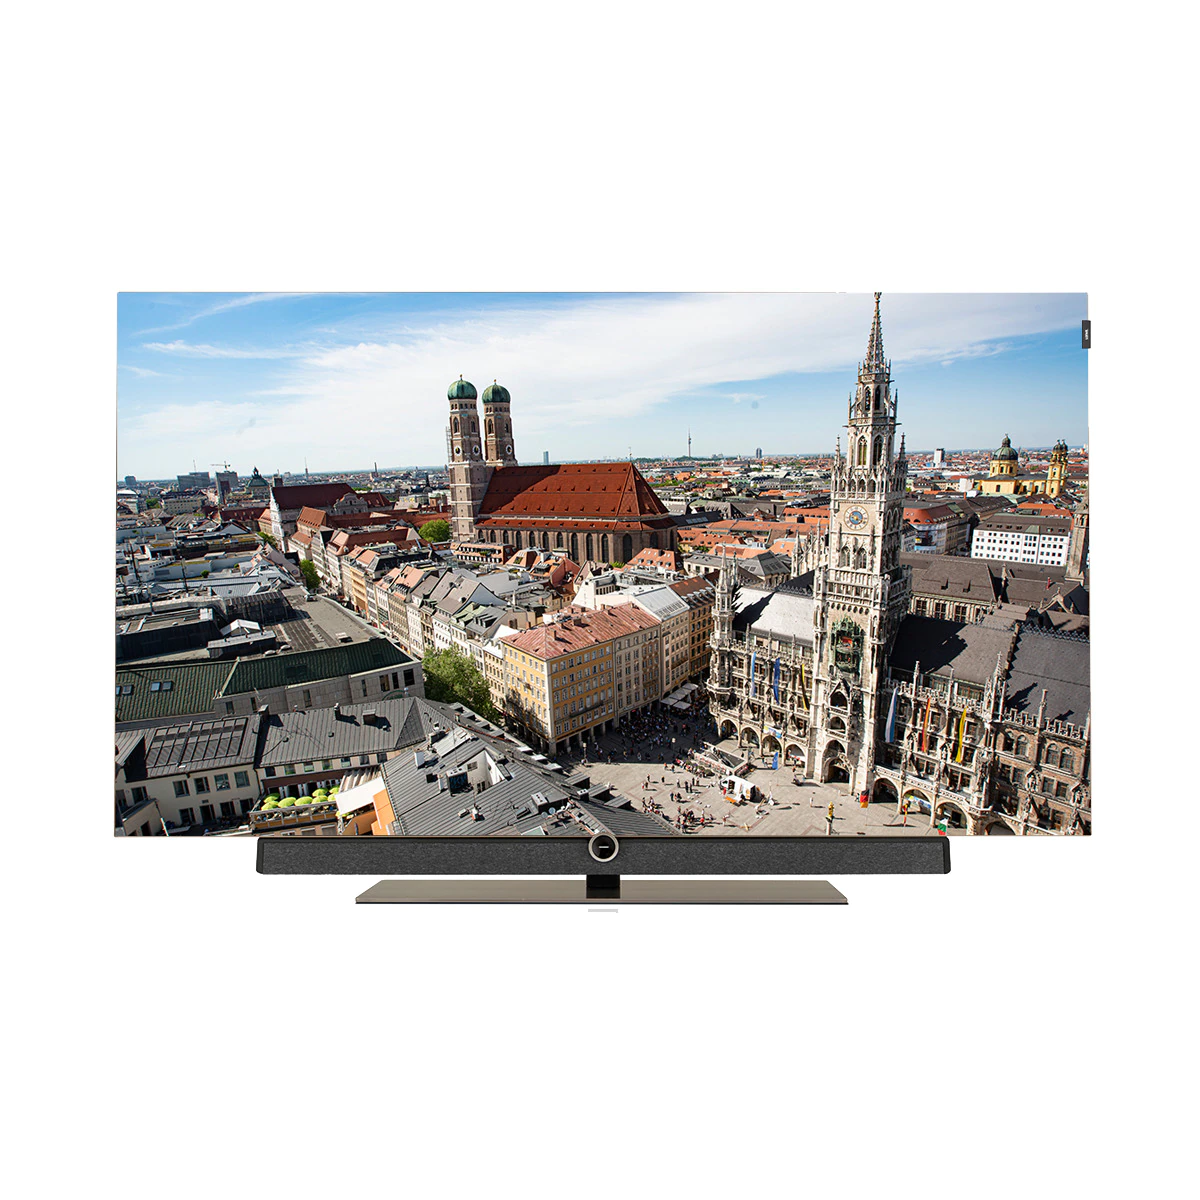 TV OLED 165,1 cm (65'') Loewe Bild 5.65 UHD 4K, HDR, DR+ 1 TB, Wi-Fi y Smart TV